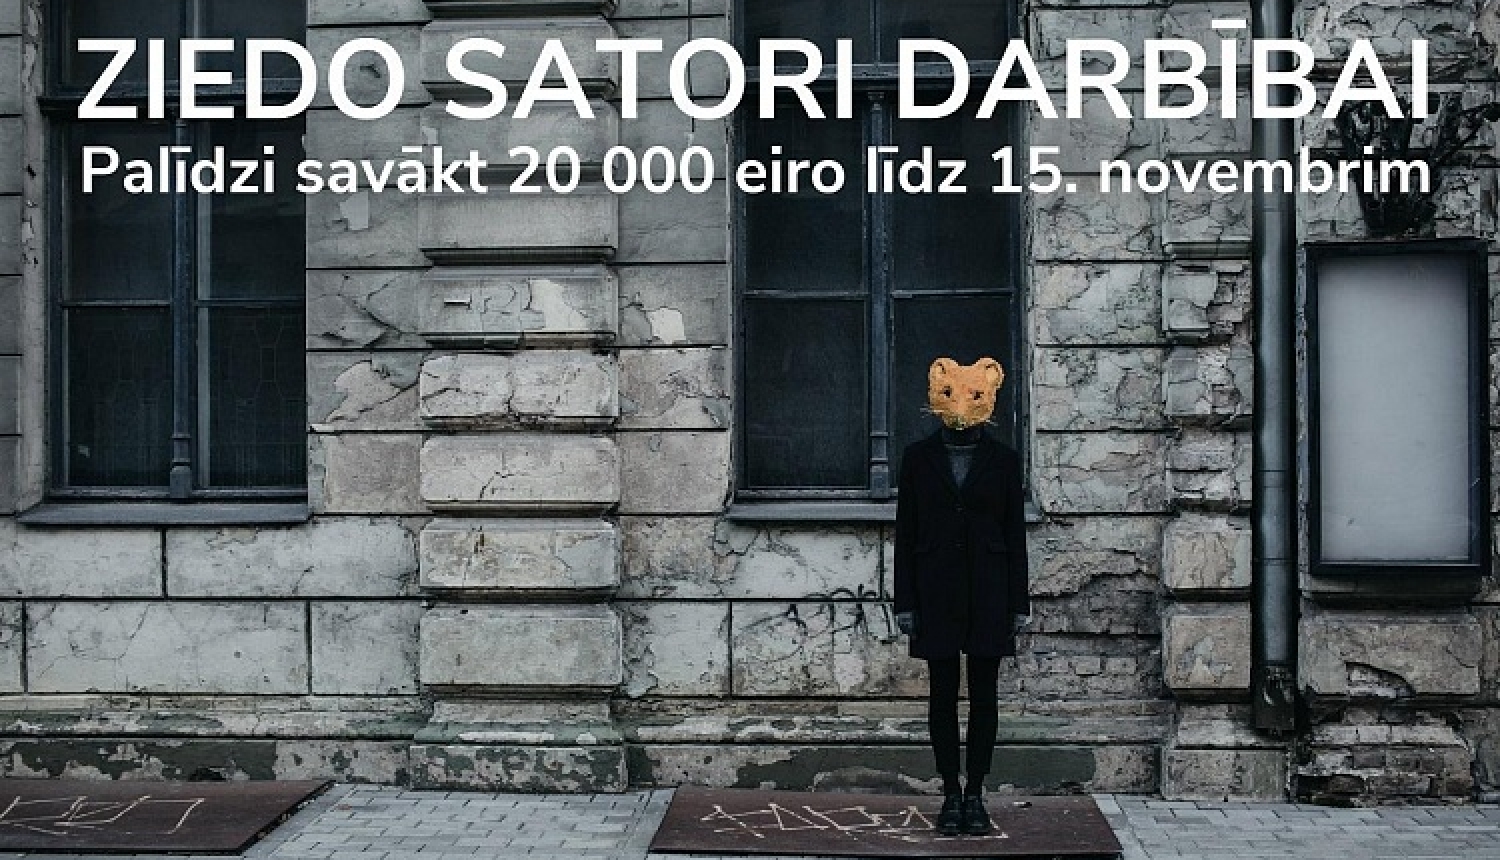 “Satori” sāk ziedošanas kampaņu un izsoli ar mērķi līdz 15. novembrim savākt 20 000 eiro “Satori” darbībai